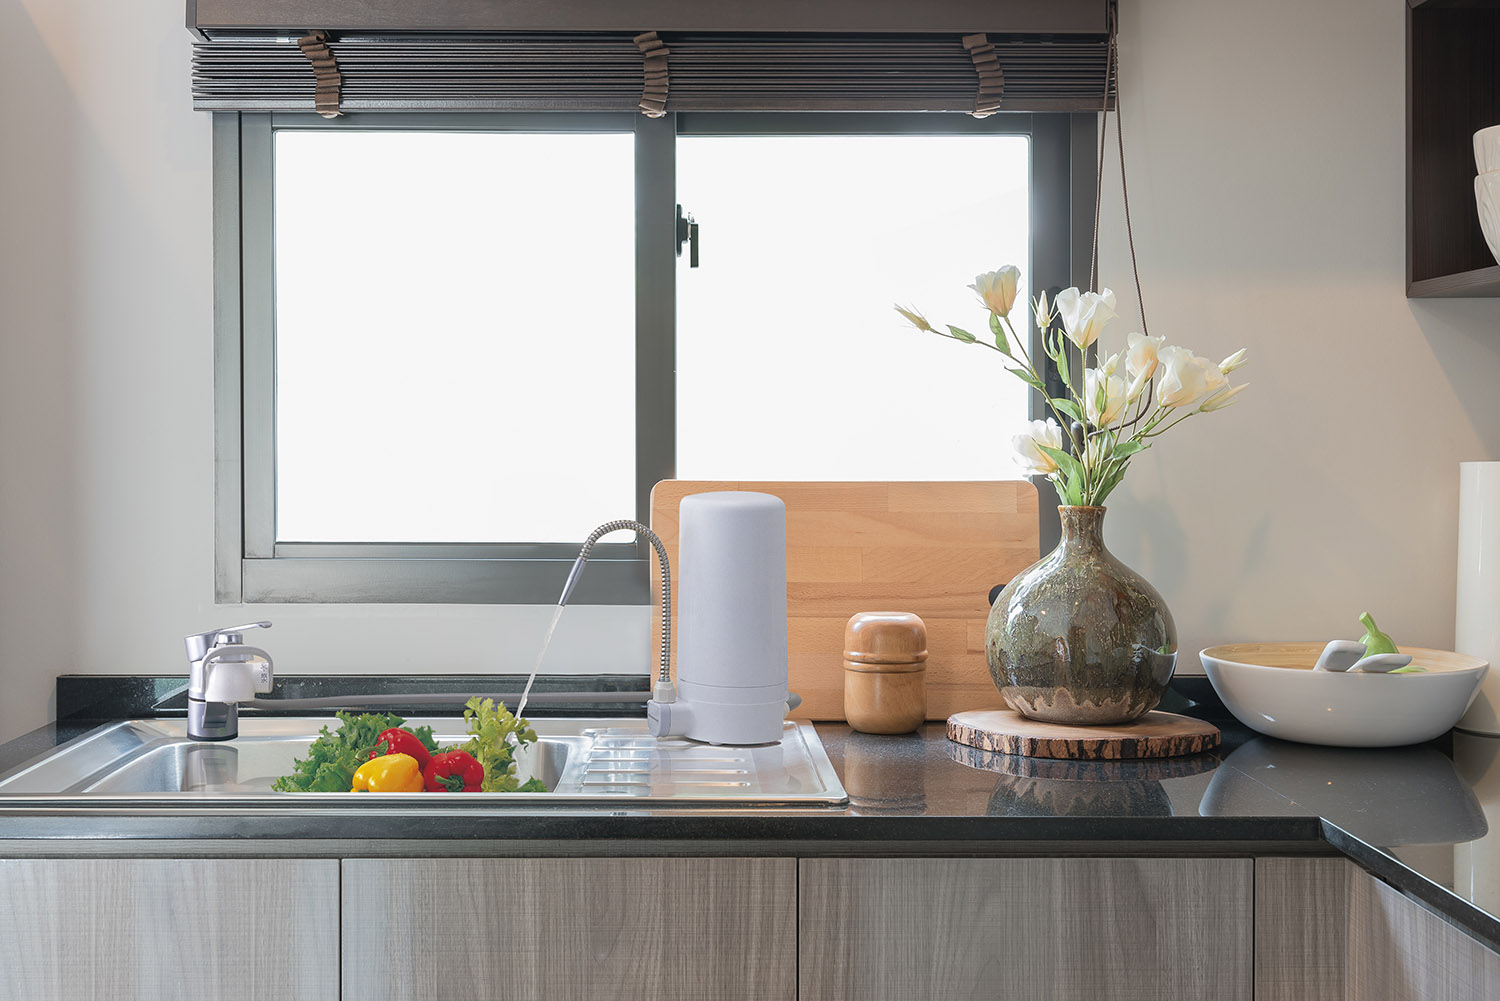 Xu thế thiết kế không gian bếp tối giản, hiện đại ngày càng được ưa chuộng